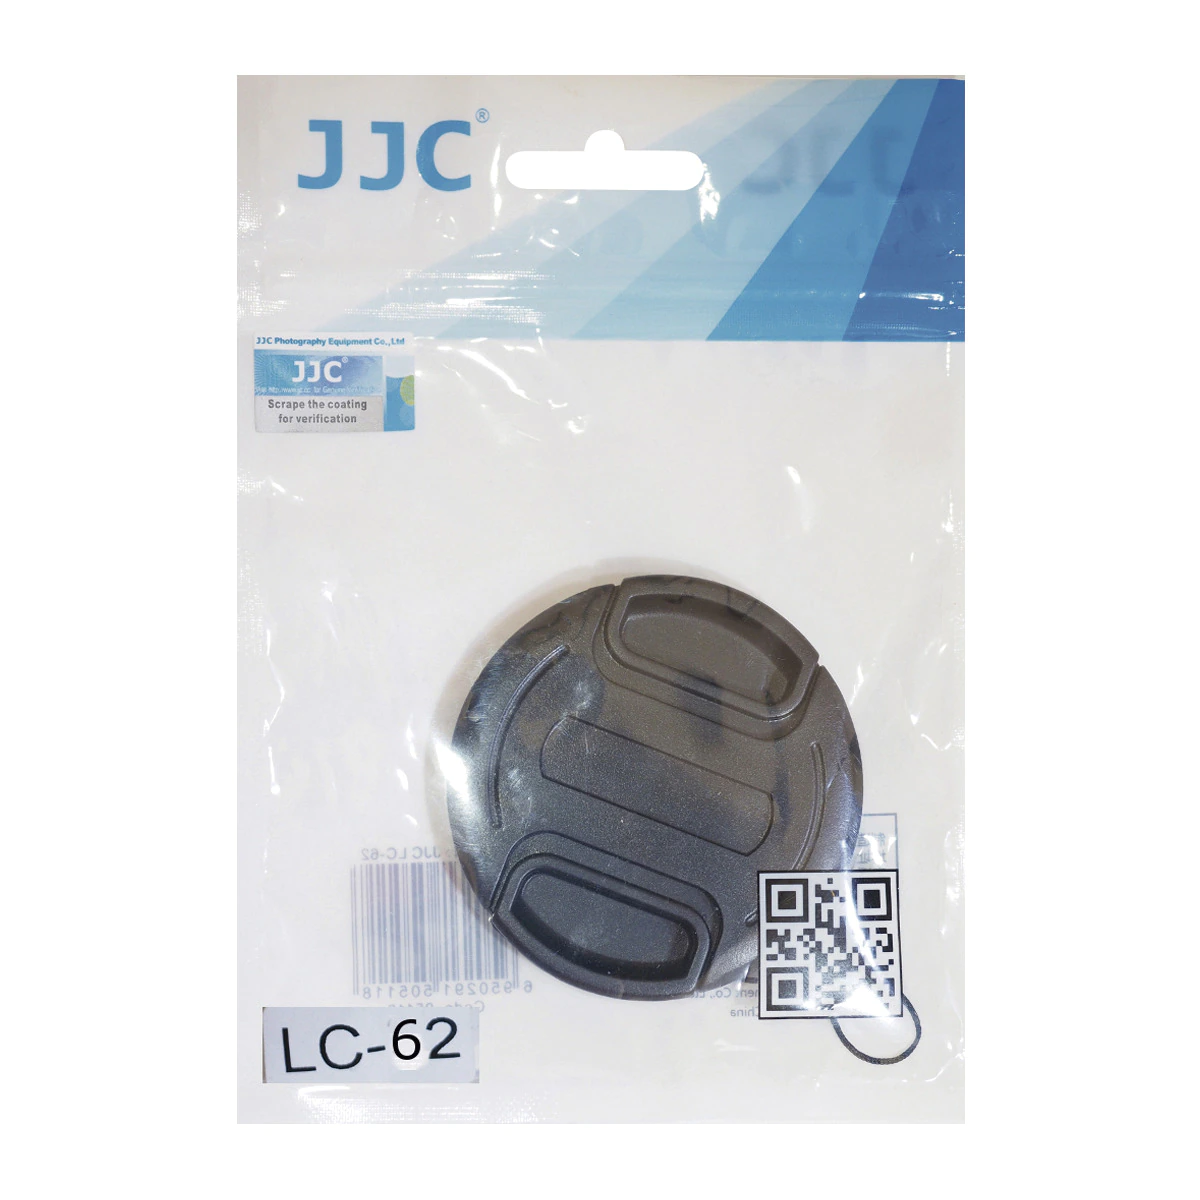 Tapa de protección JJC para objetivos con diametro 62 mm